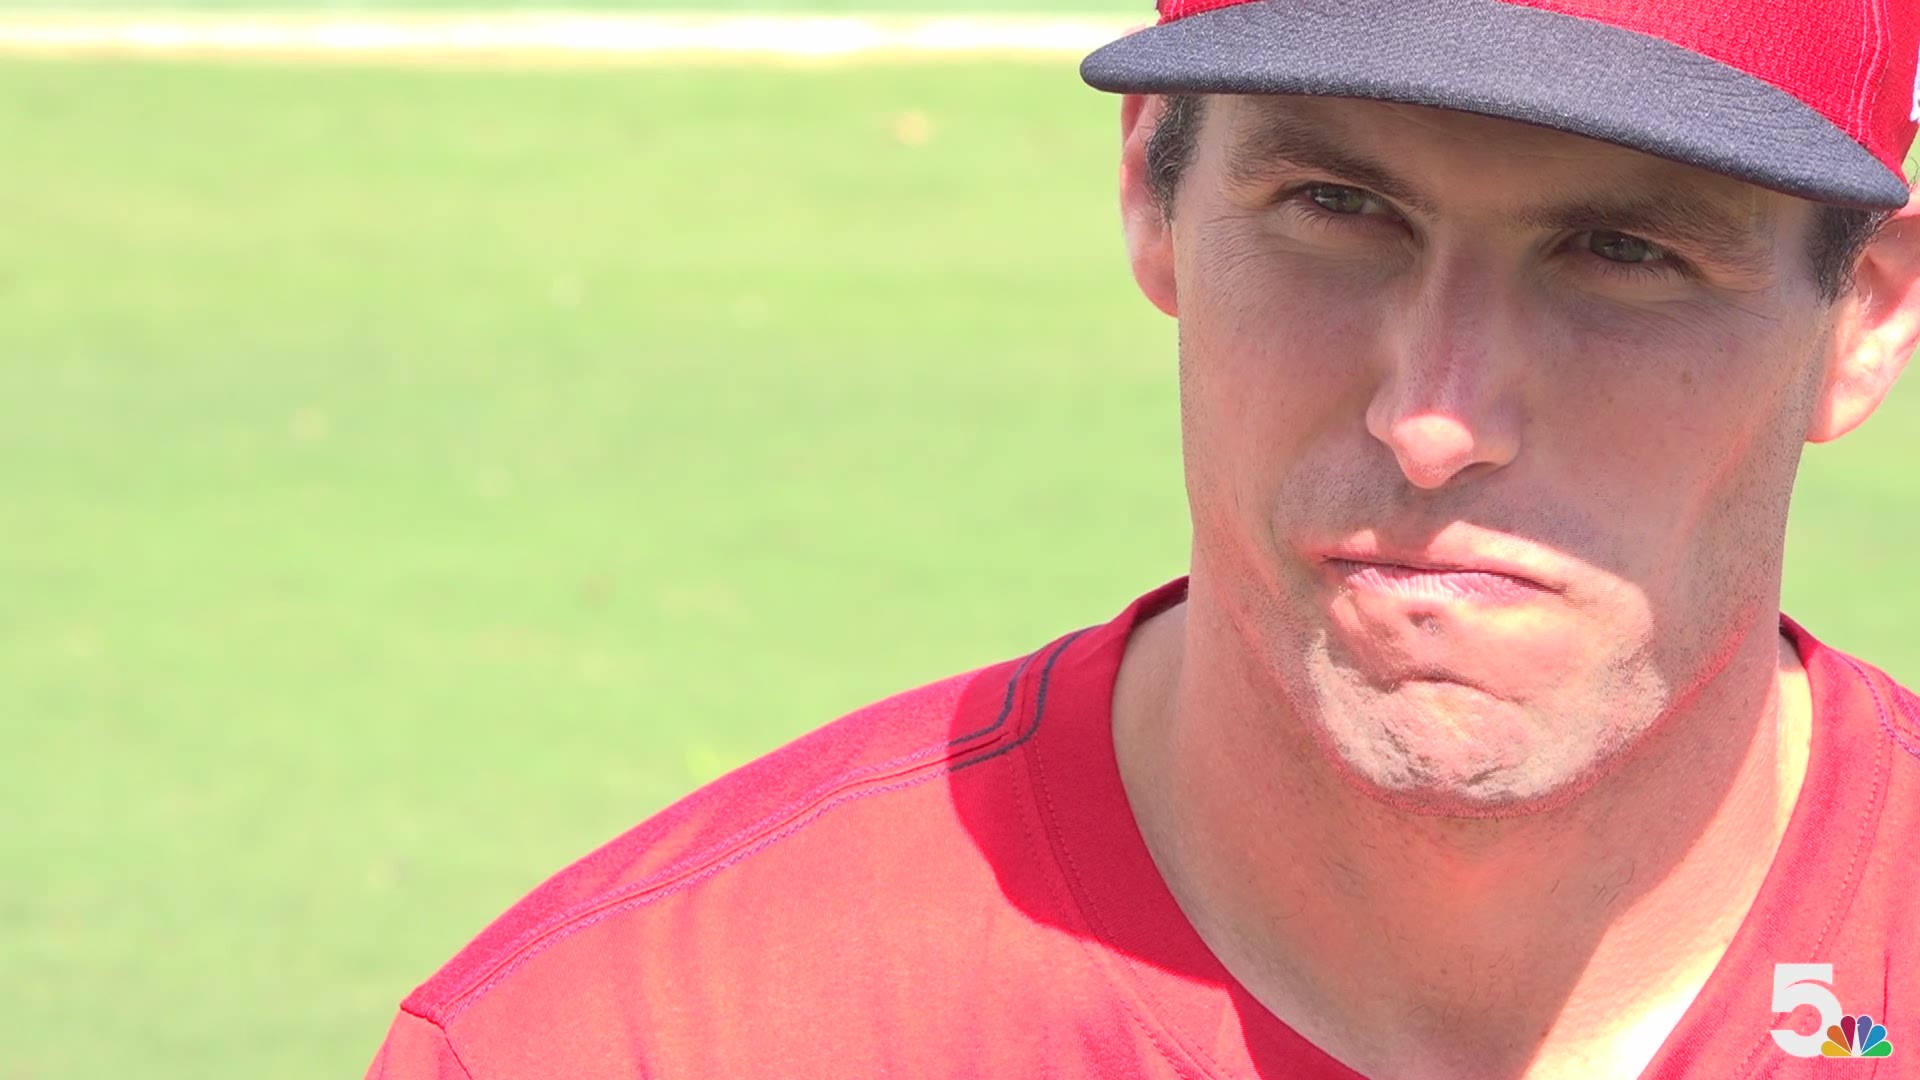 The Cardinals' new star first baseman